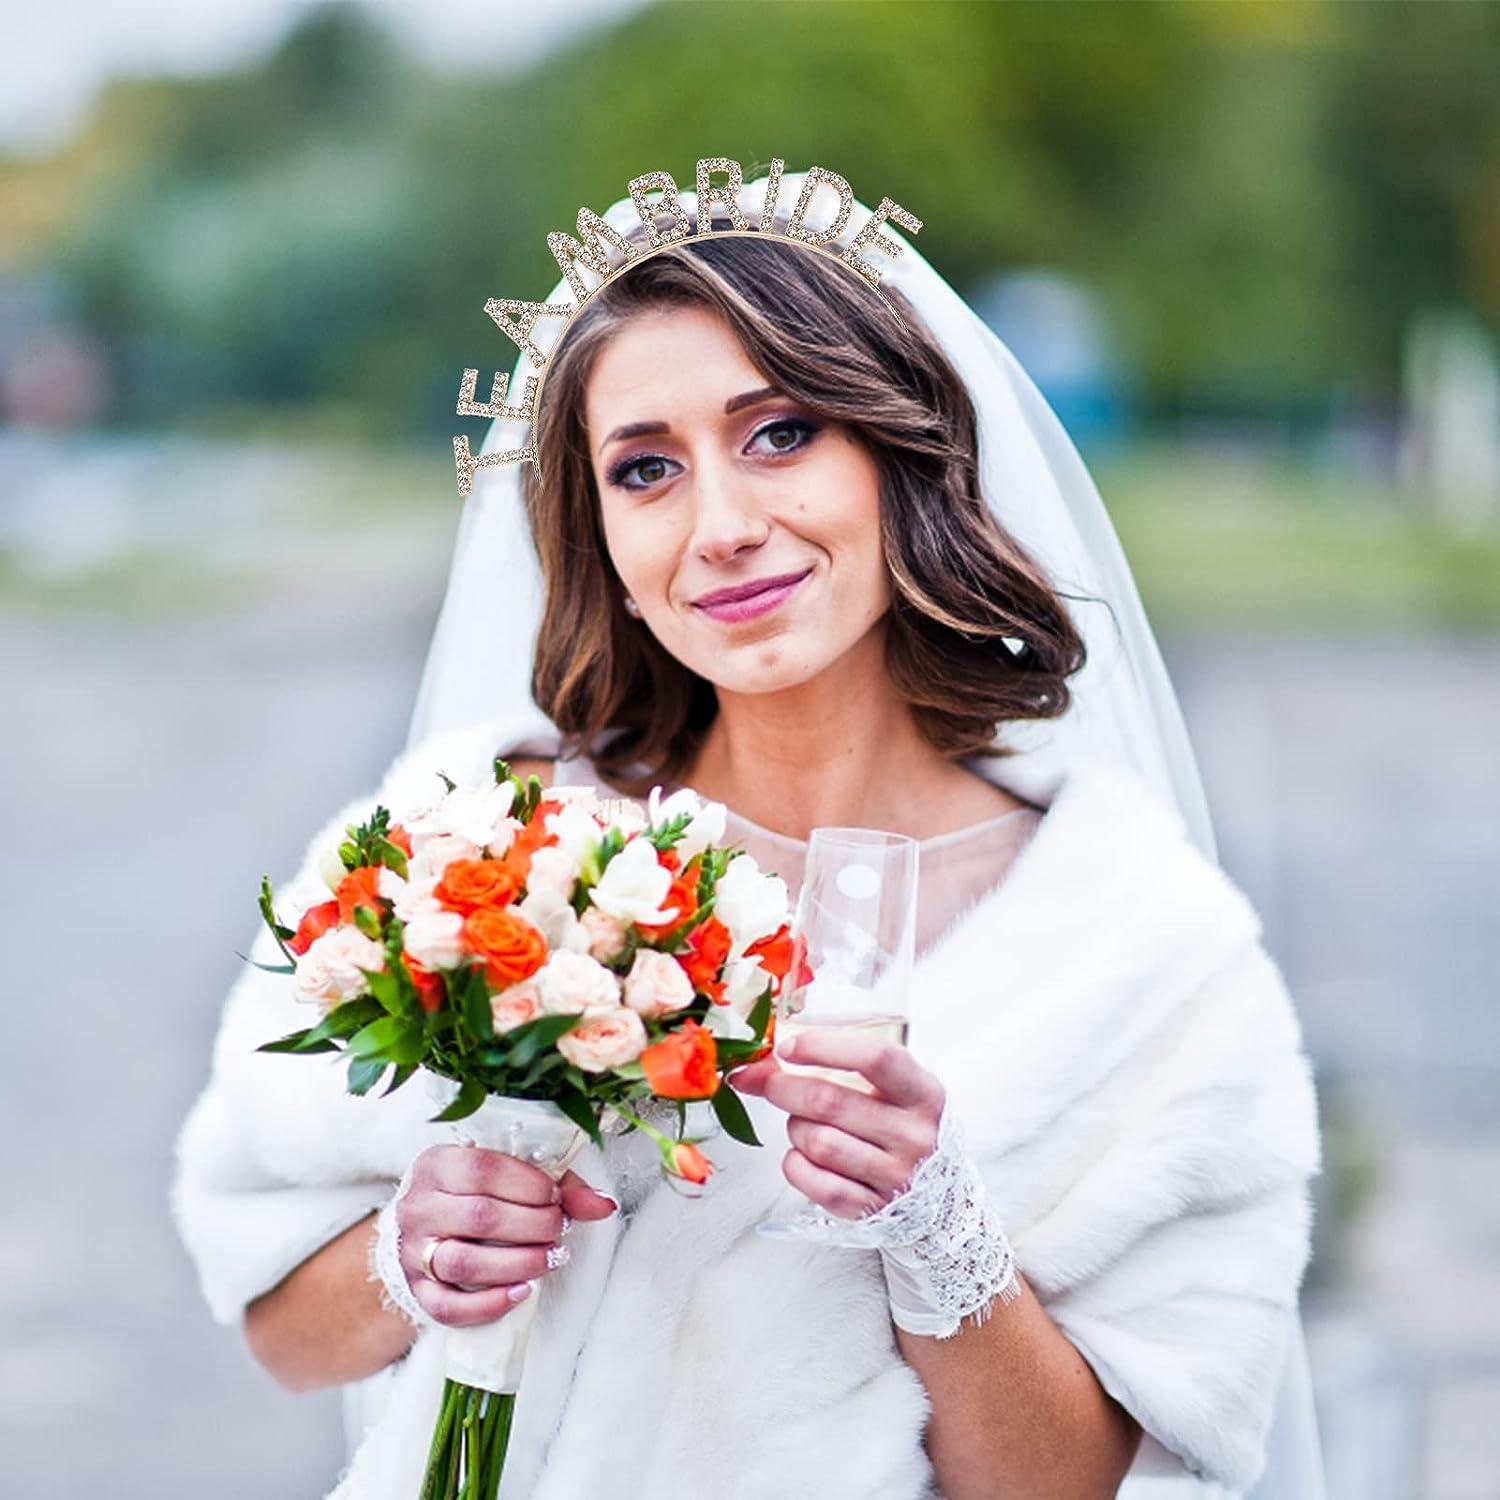 TEAM BRIDE, Bachelorette Party Supplies, Bride Accessories